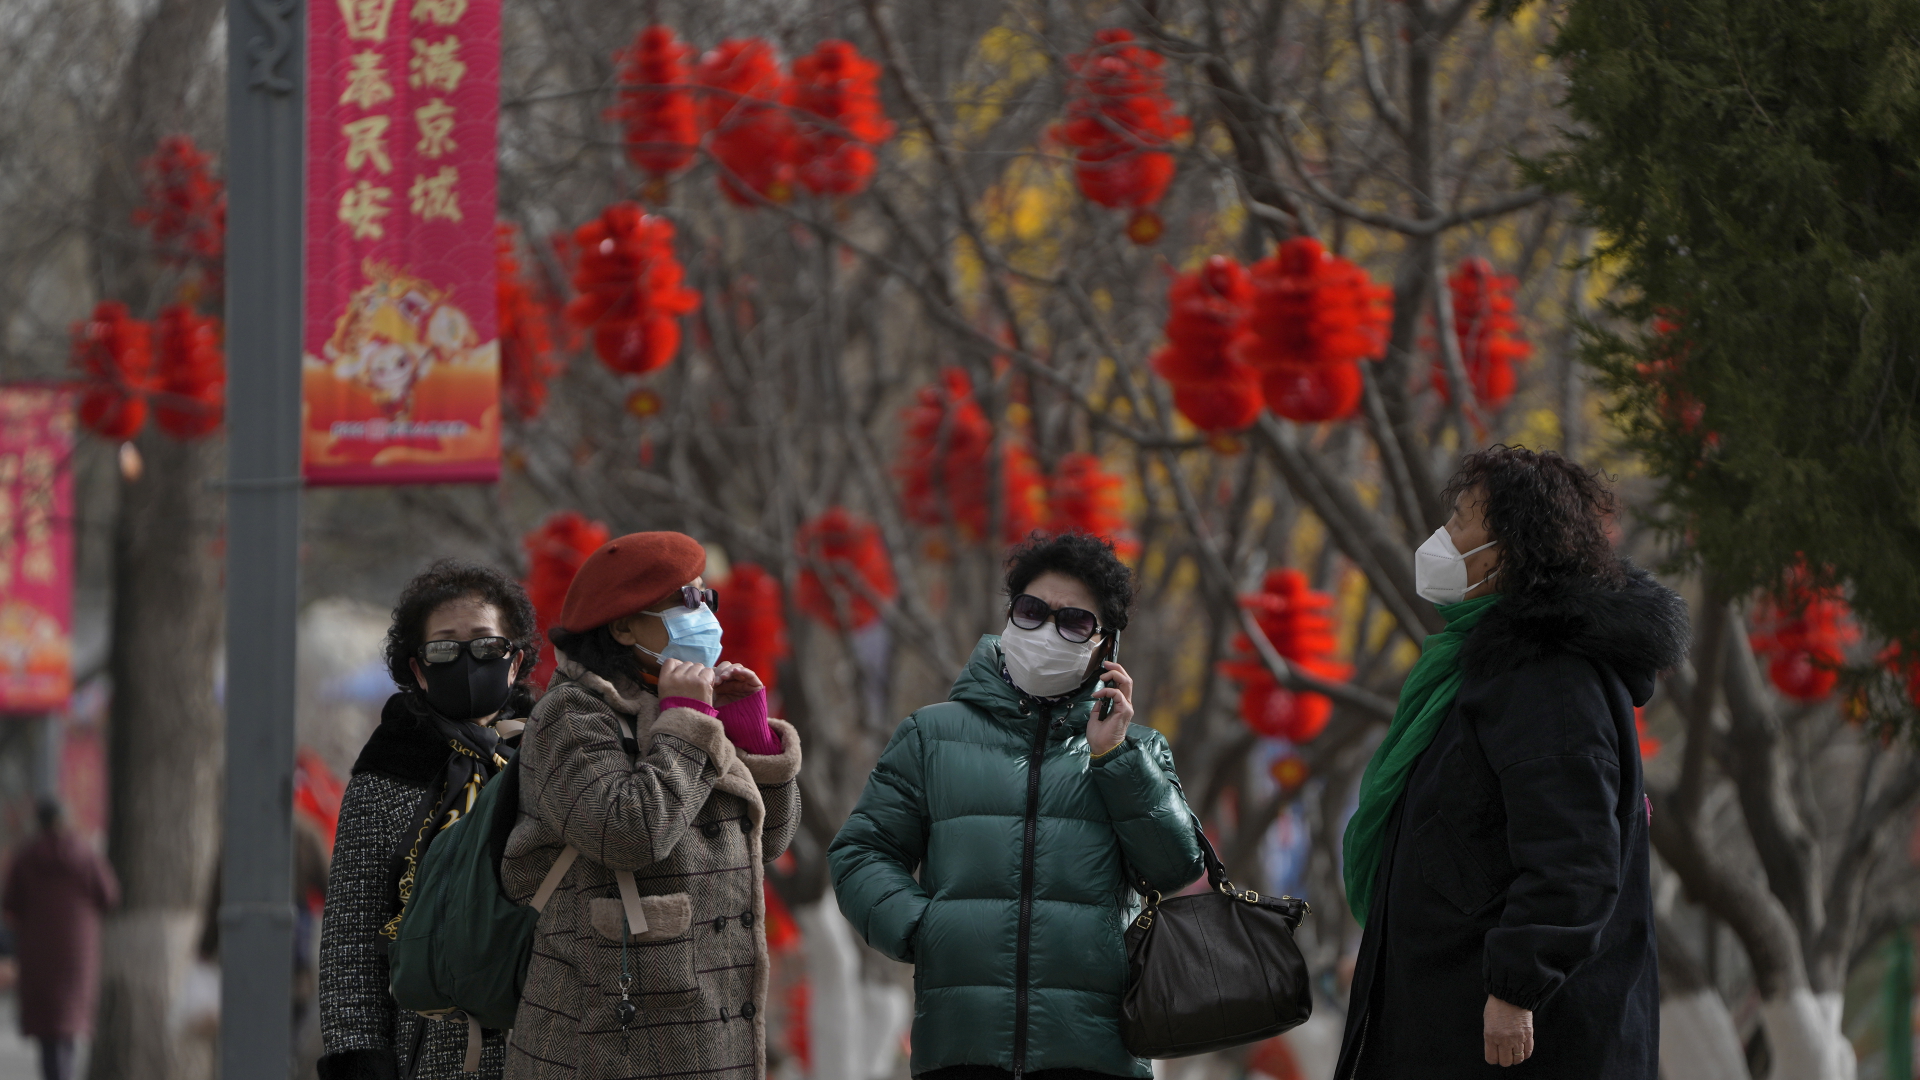 Frauen tragen Mund-Nasen-Schutz während sie einen Park in Peking besuchen, der mit Dekorationen zum chinesische Neujahrsfest geschmückt ist. | dpa